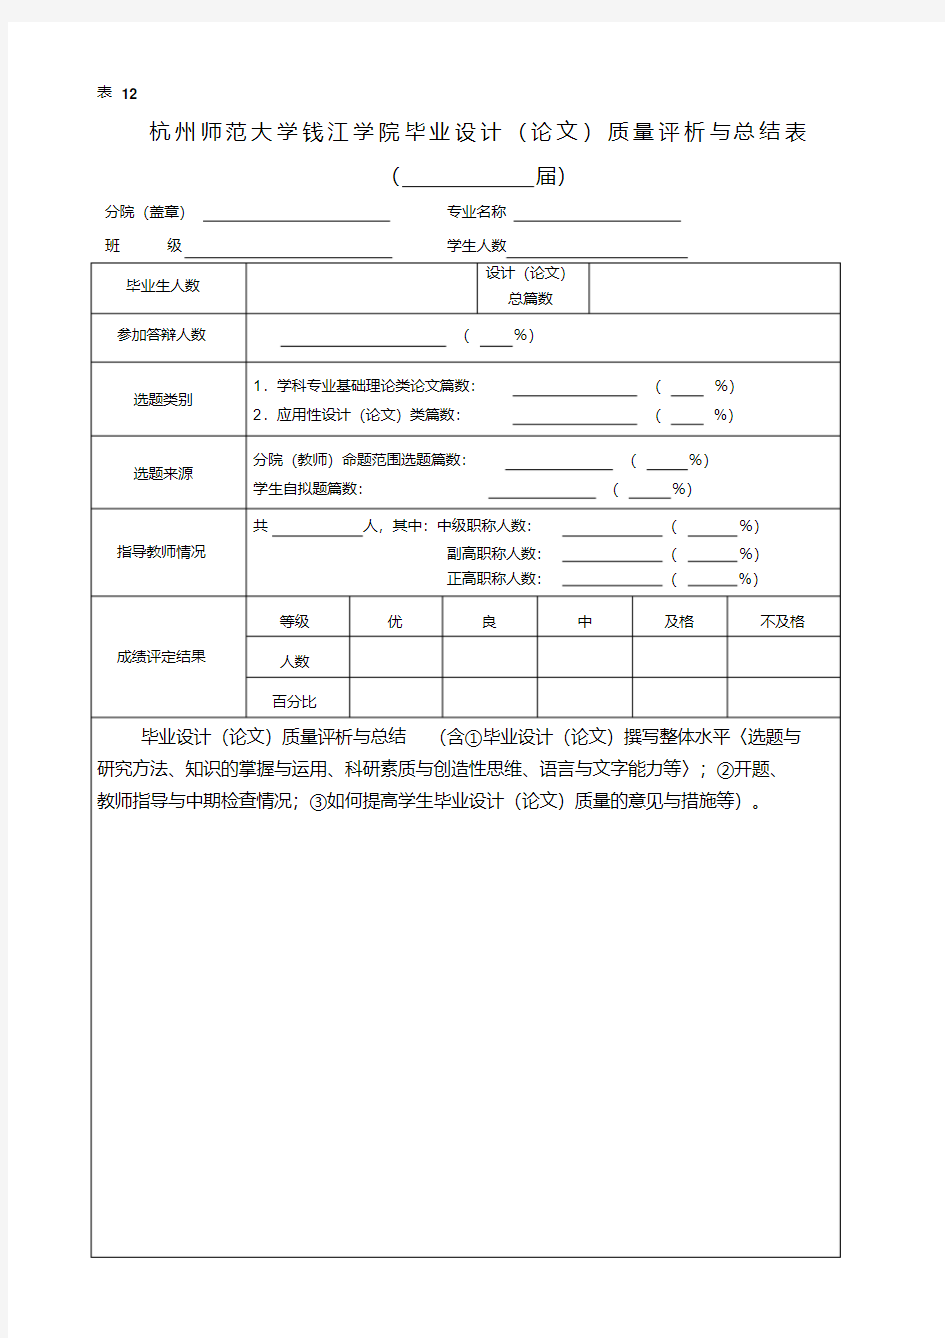 杭州师范大学钱江学院毕业设计(论文)质量评析与总结表